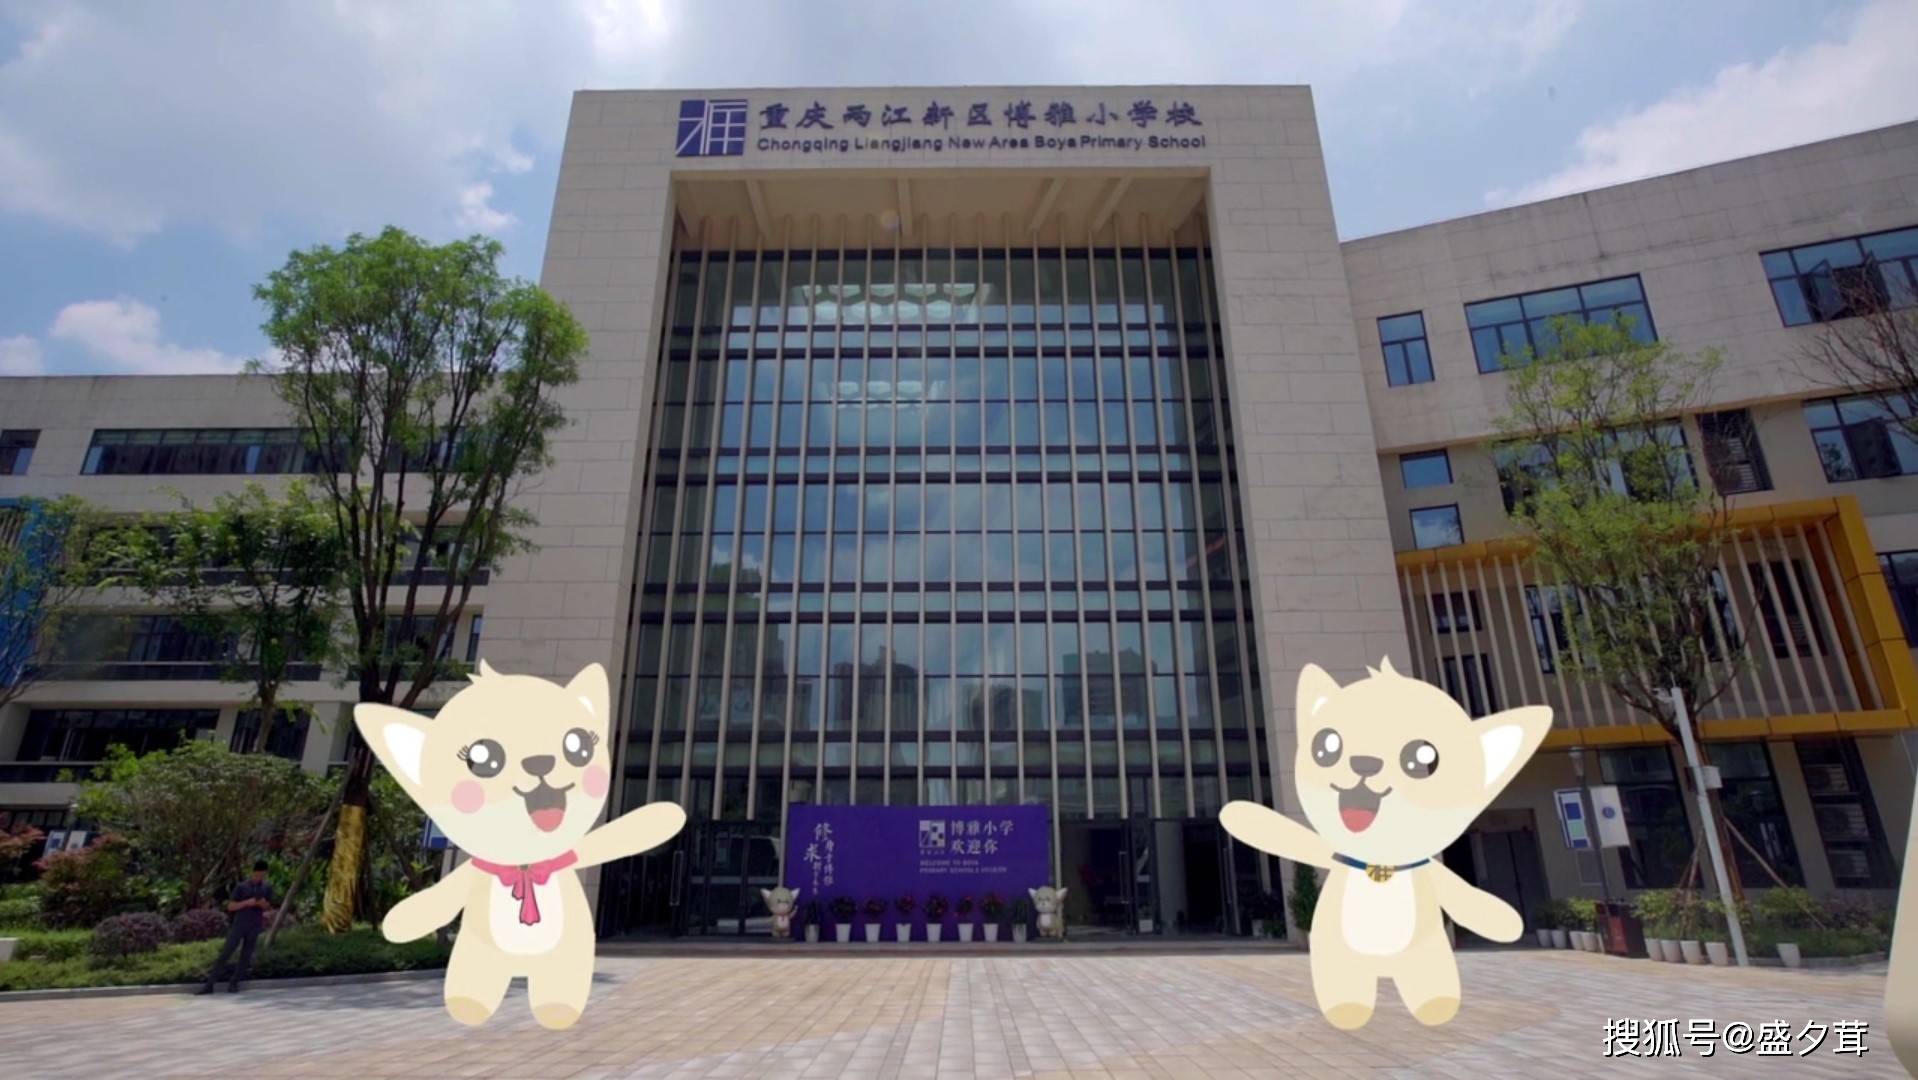 重庆两江新区博雅小学附属幼儿园位于博雅小学校内,办园规模3个班,是